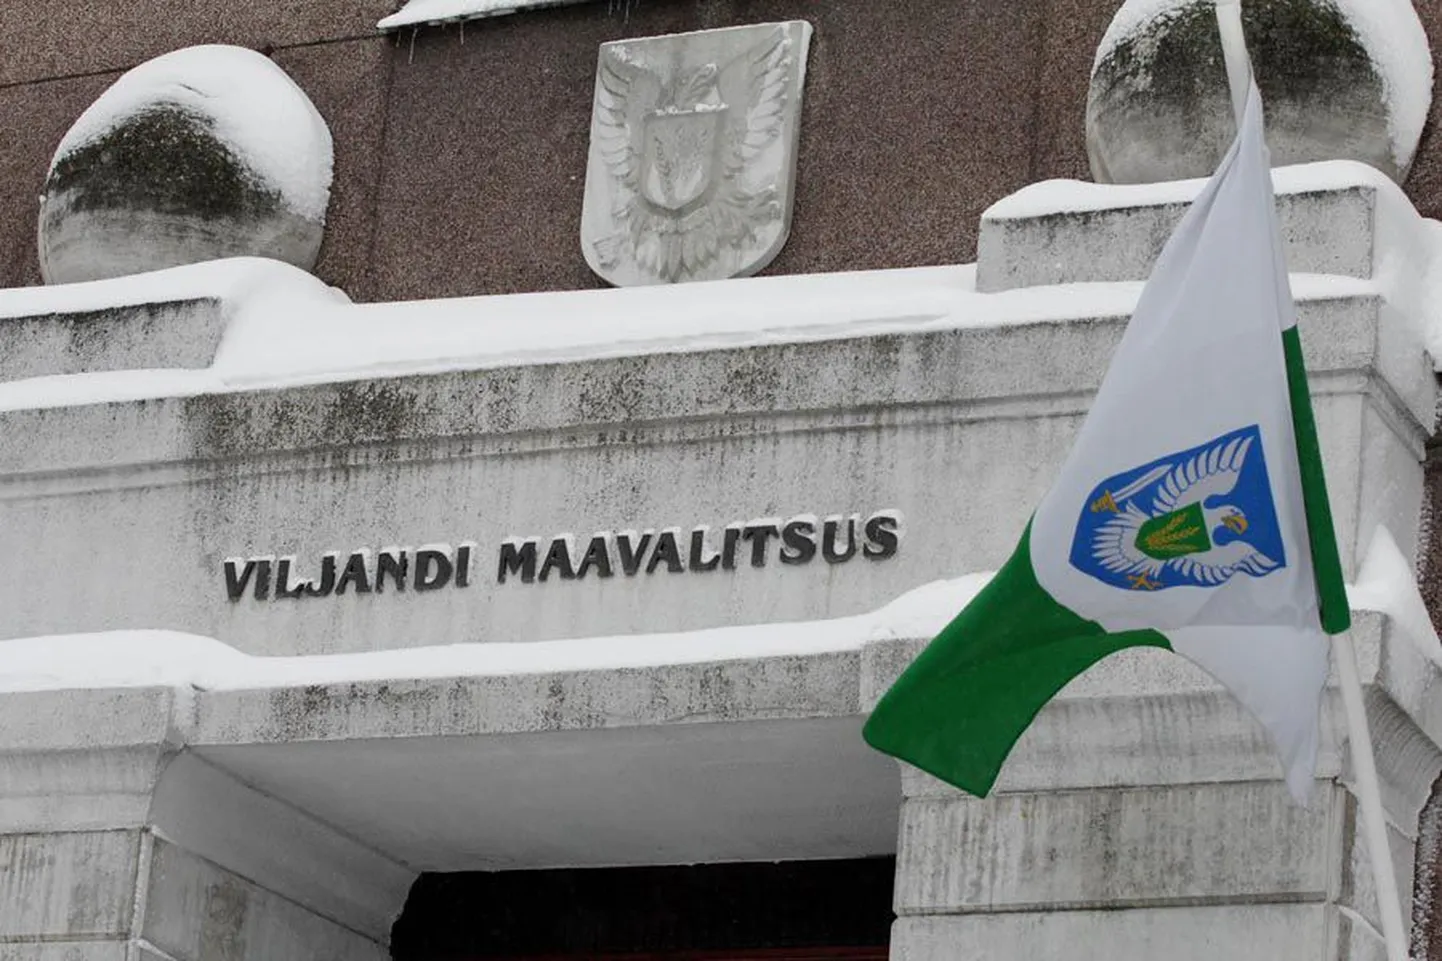 Viljandi maavalitsuse 58 töötajast 32 muutuvad esmaspäevast töölepinguga palgaliseks.